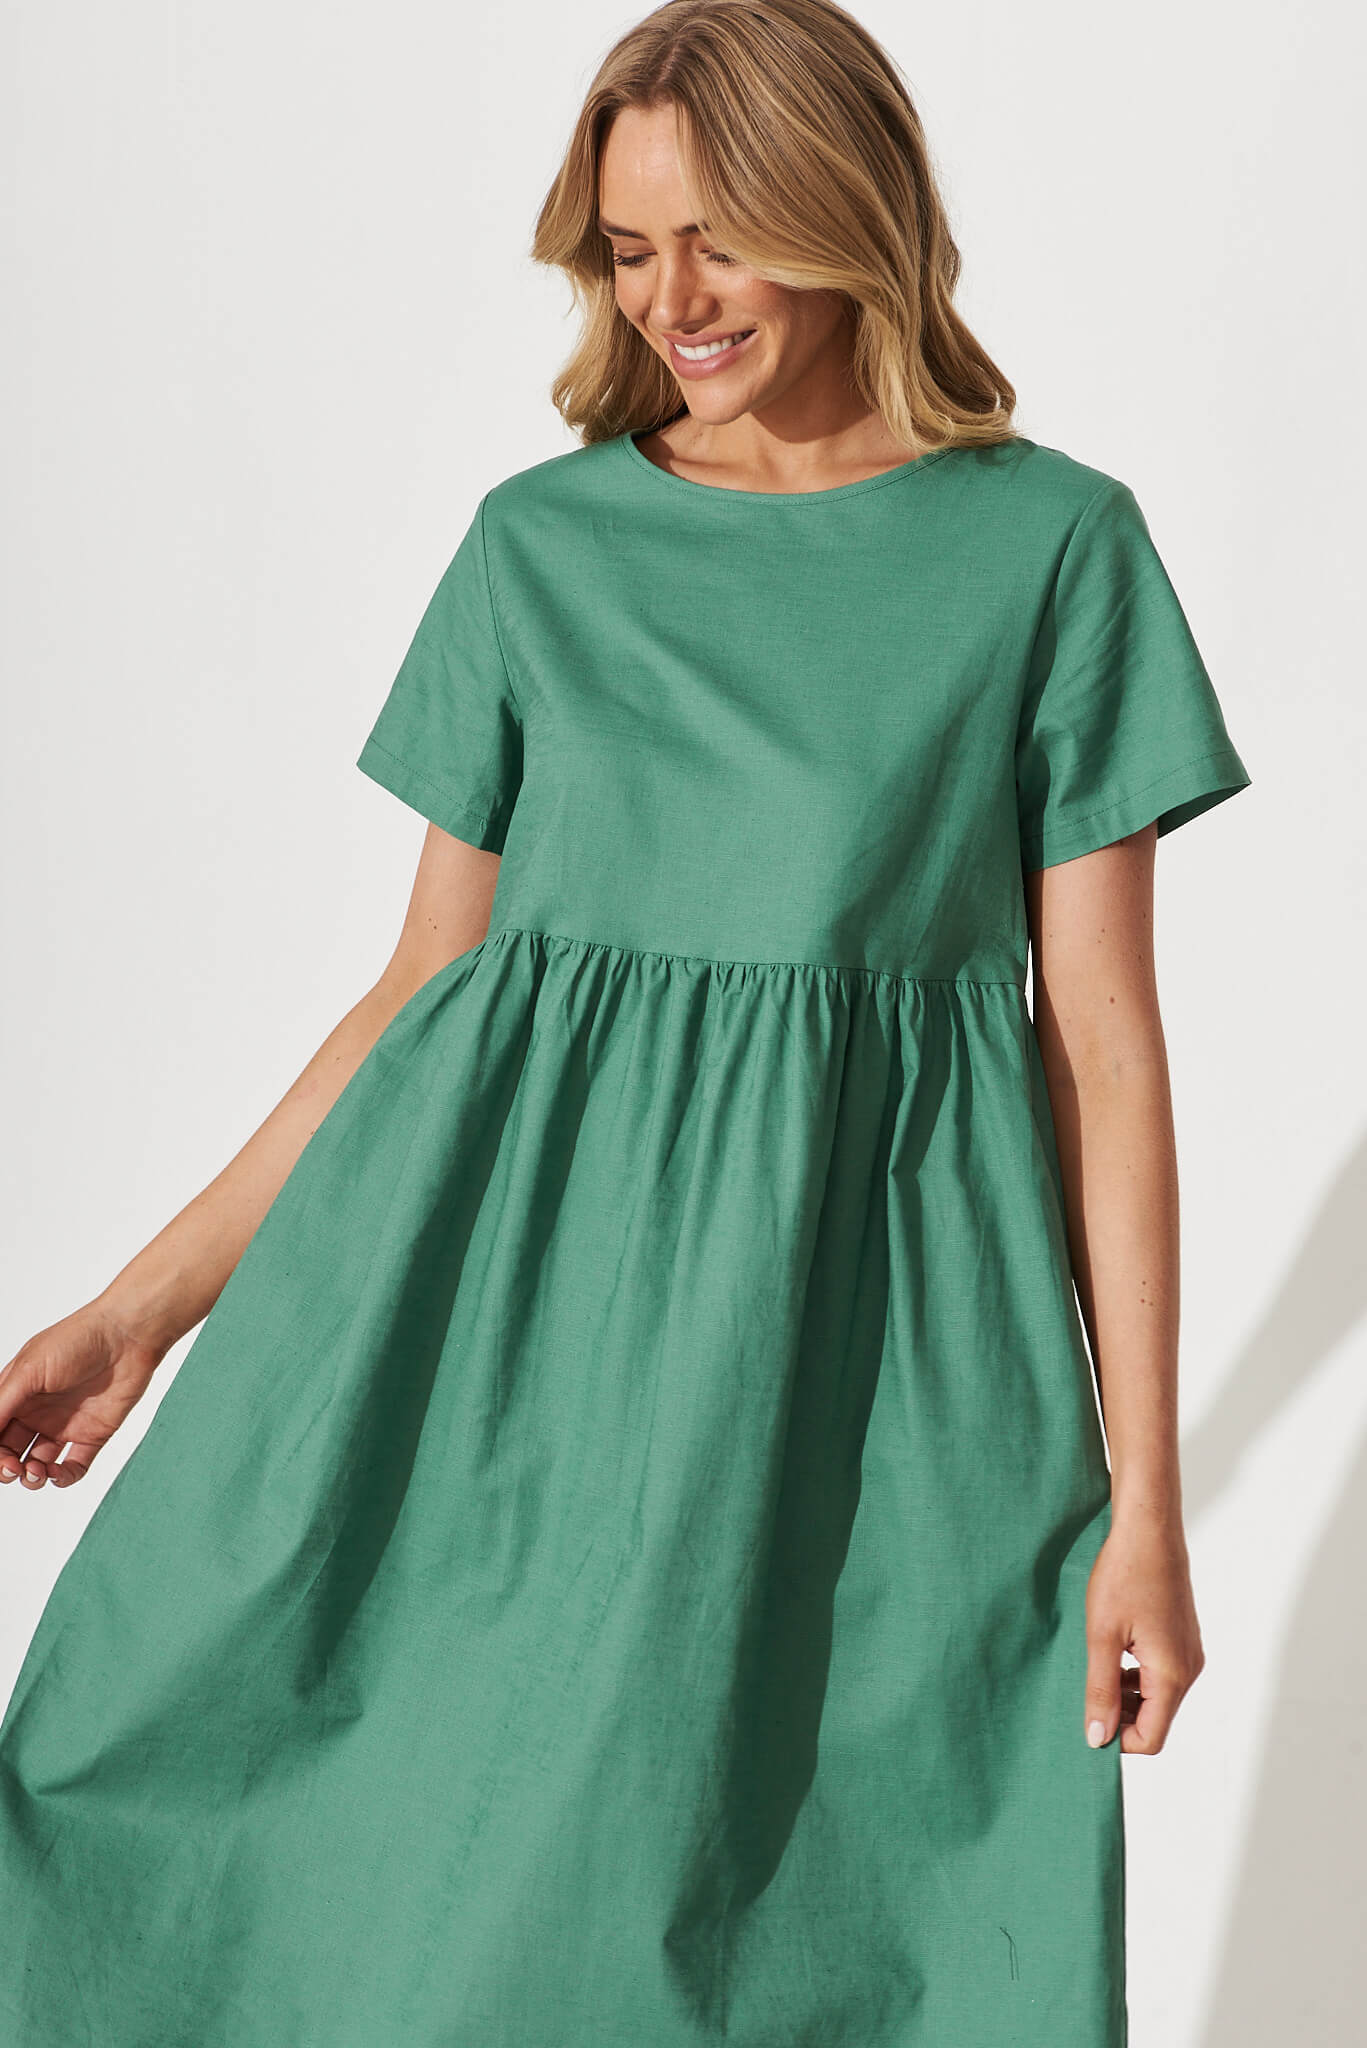 Seaside Midi Smock Dress In Sage Green Linen Cotton – St Frock